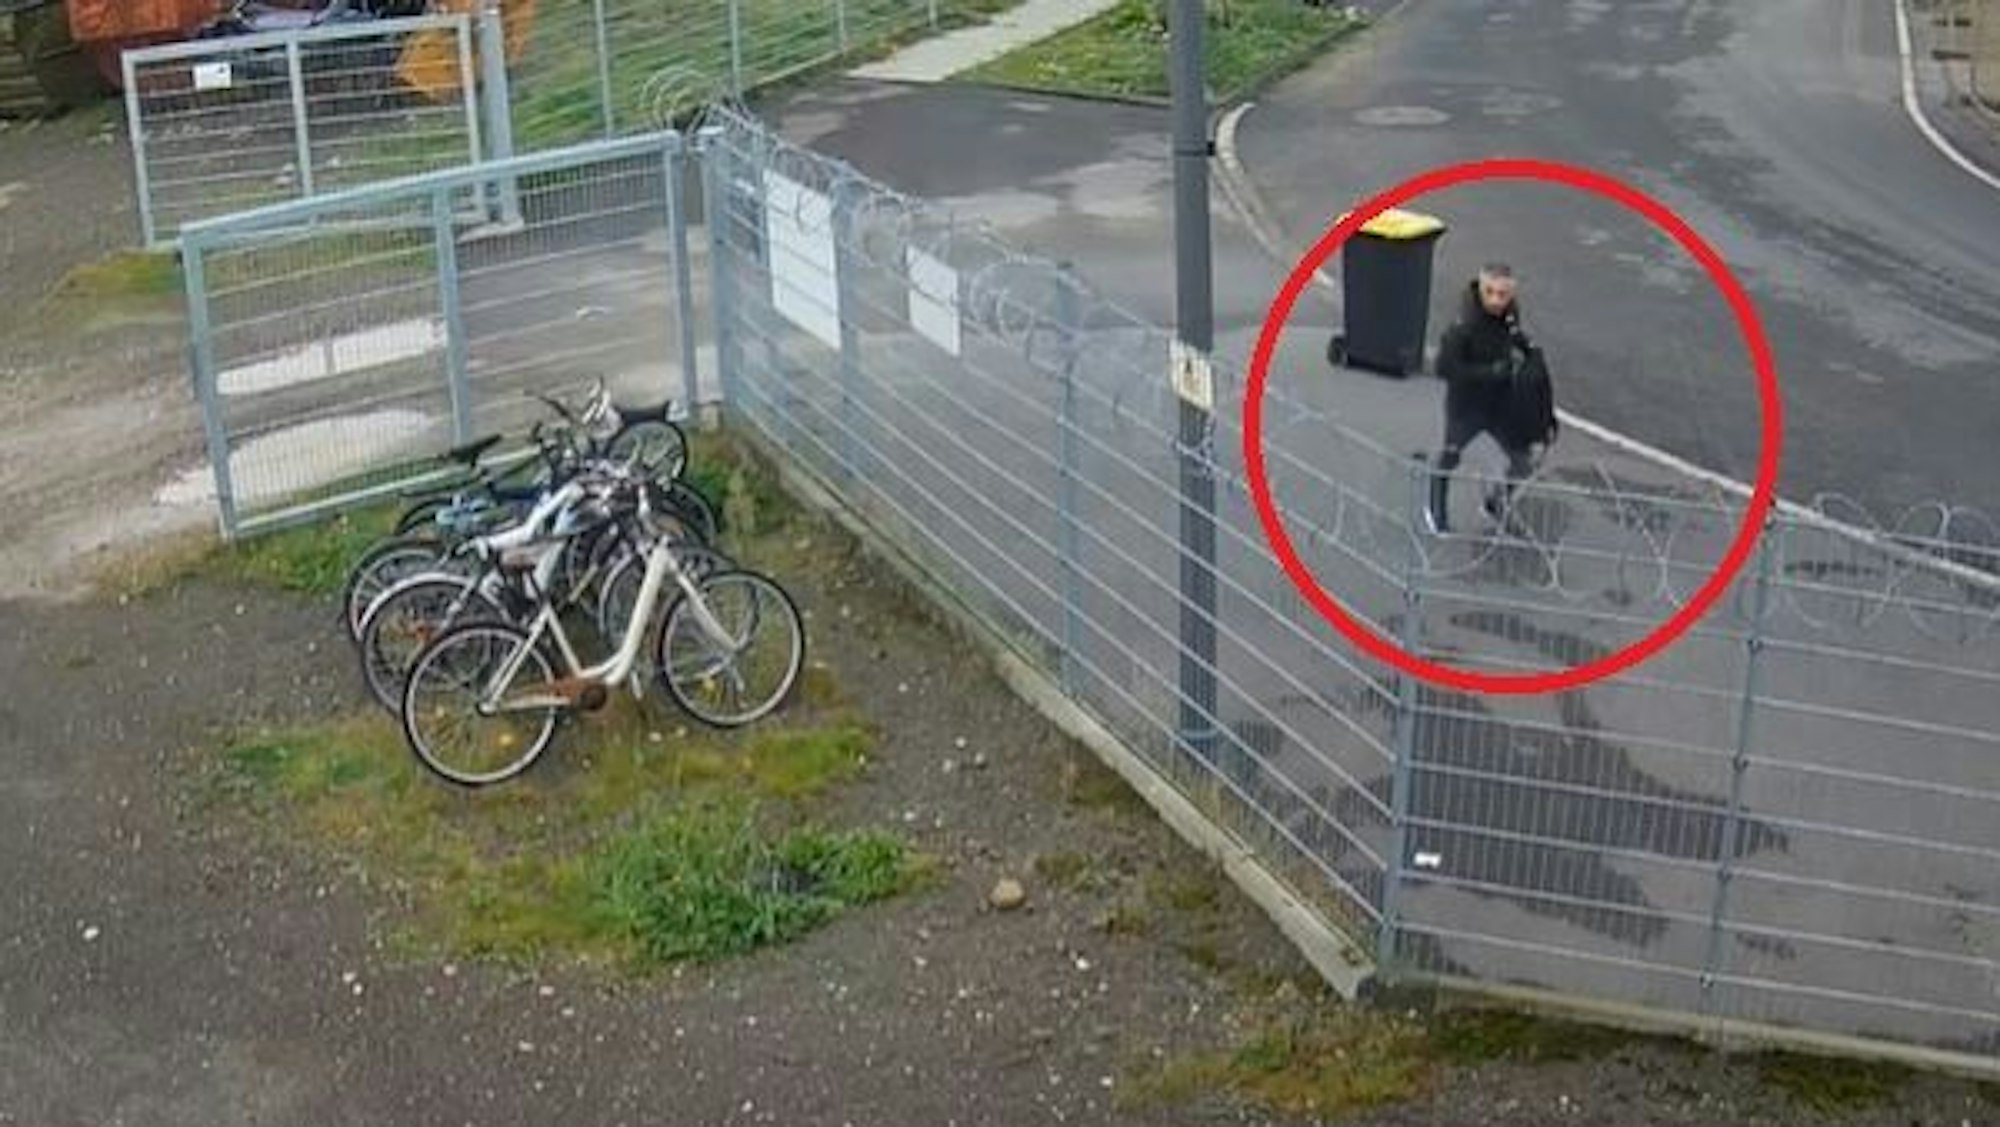 Screenshot von einer Überwachungskamera. Zu sehen ist ein Mann in schwarzen Klamotten, der von einem Grundstück wegläuft.